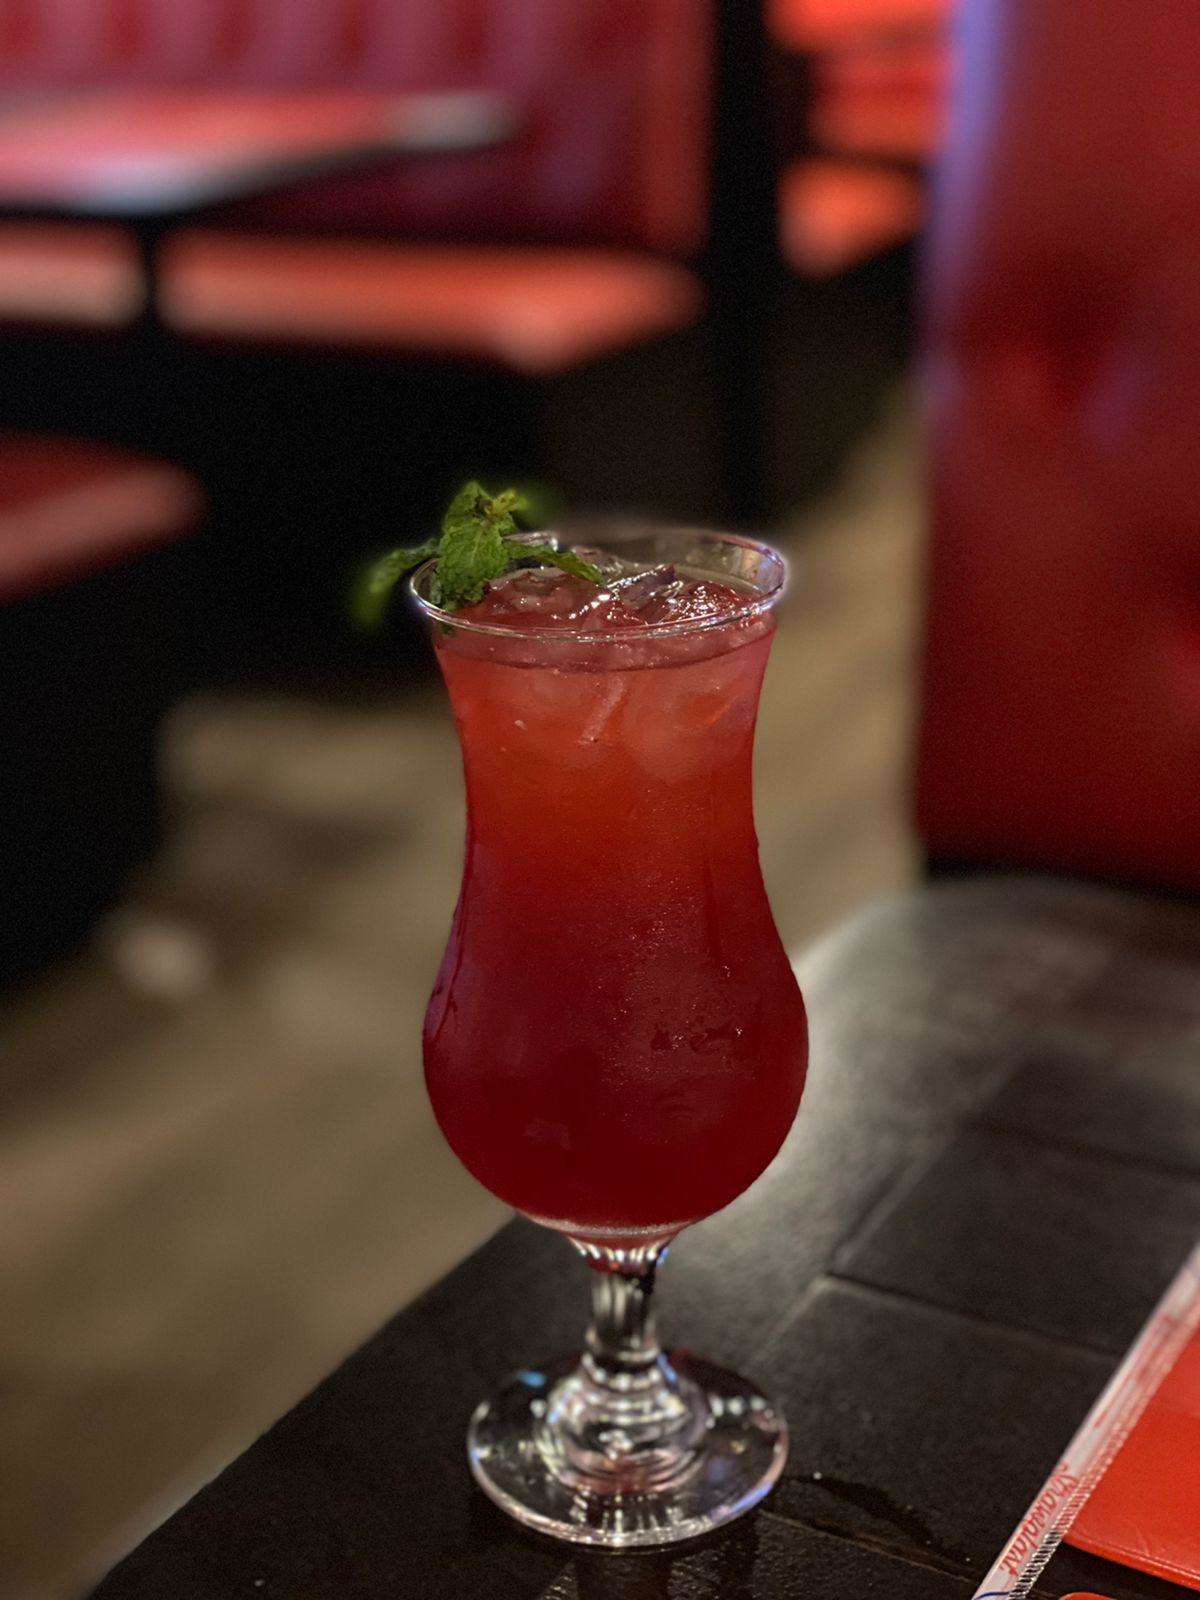 Criação do bartender Ian Coelho, o drink ‘Capetão’ leva gin, limão capeta espremido, suco de cramberry, grenadine e pimenta biquinho